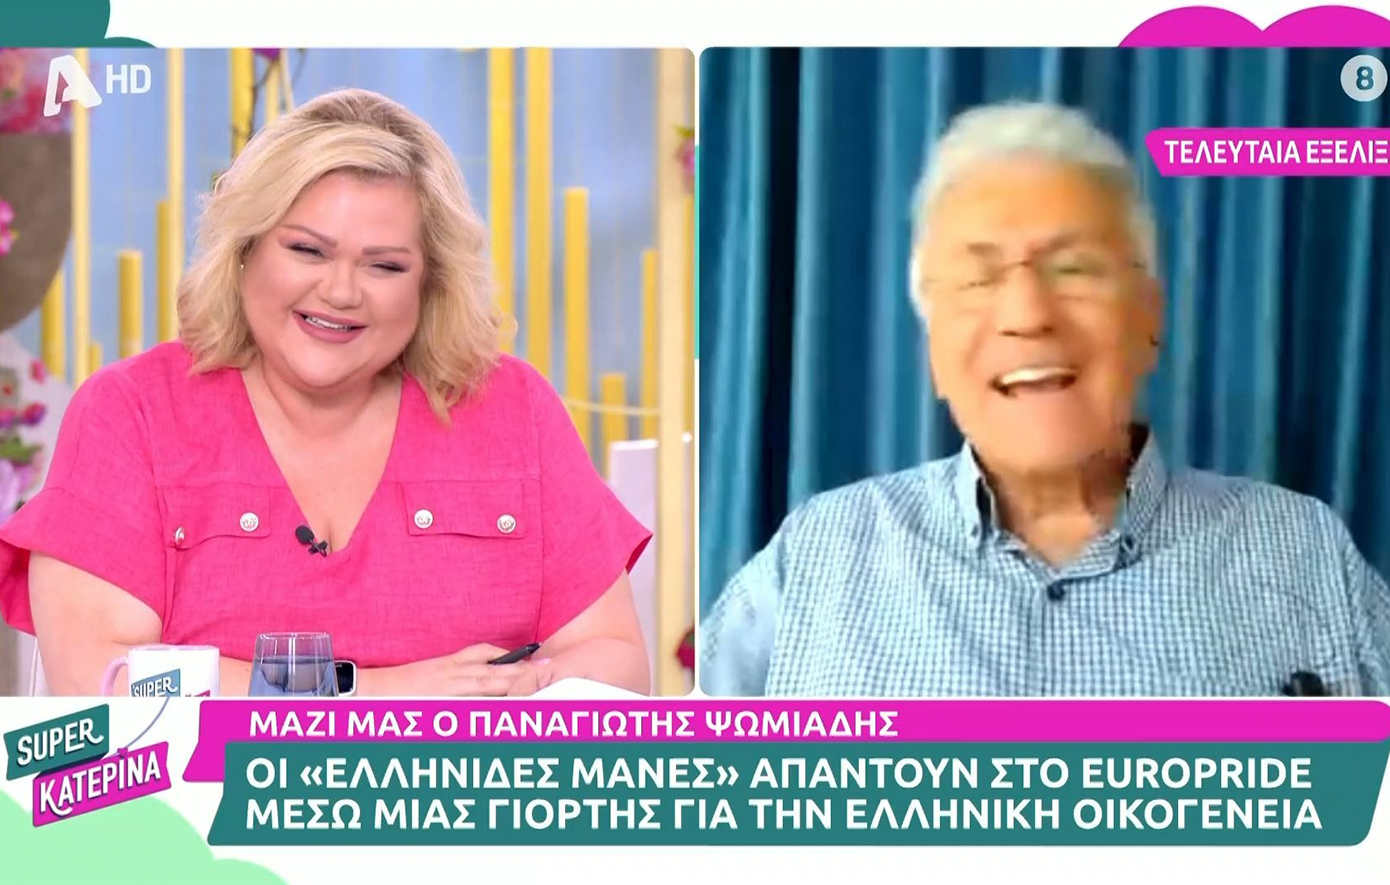 Ο Παναγιώτης Ψωμιάδης έκανε πρόταση στη Χρίσλα Γεωργακοπούλου: Θα σε φιλοξενήσω στη Θεσσαλονίκη και θα σε πάω για σουβλάκια